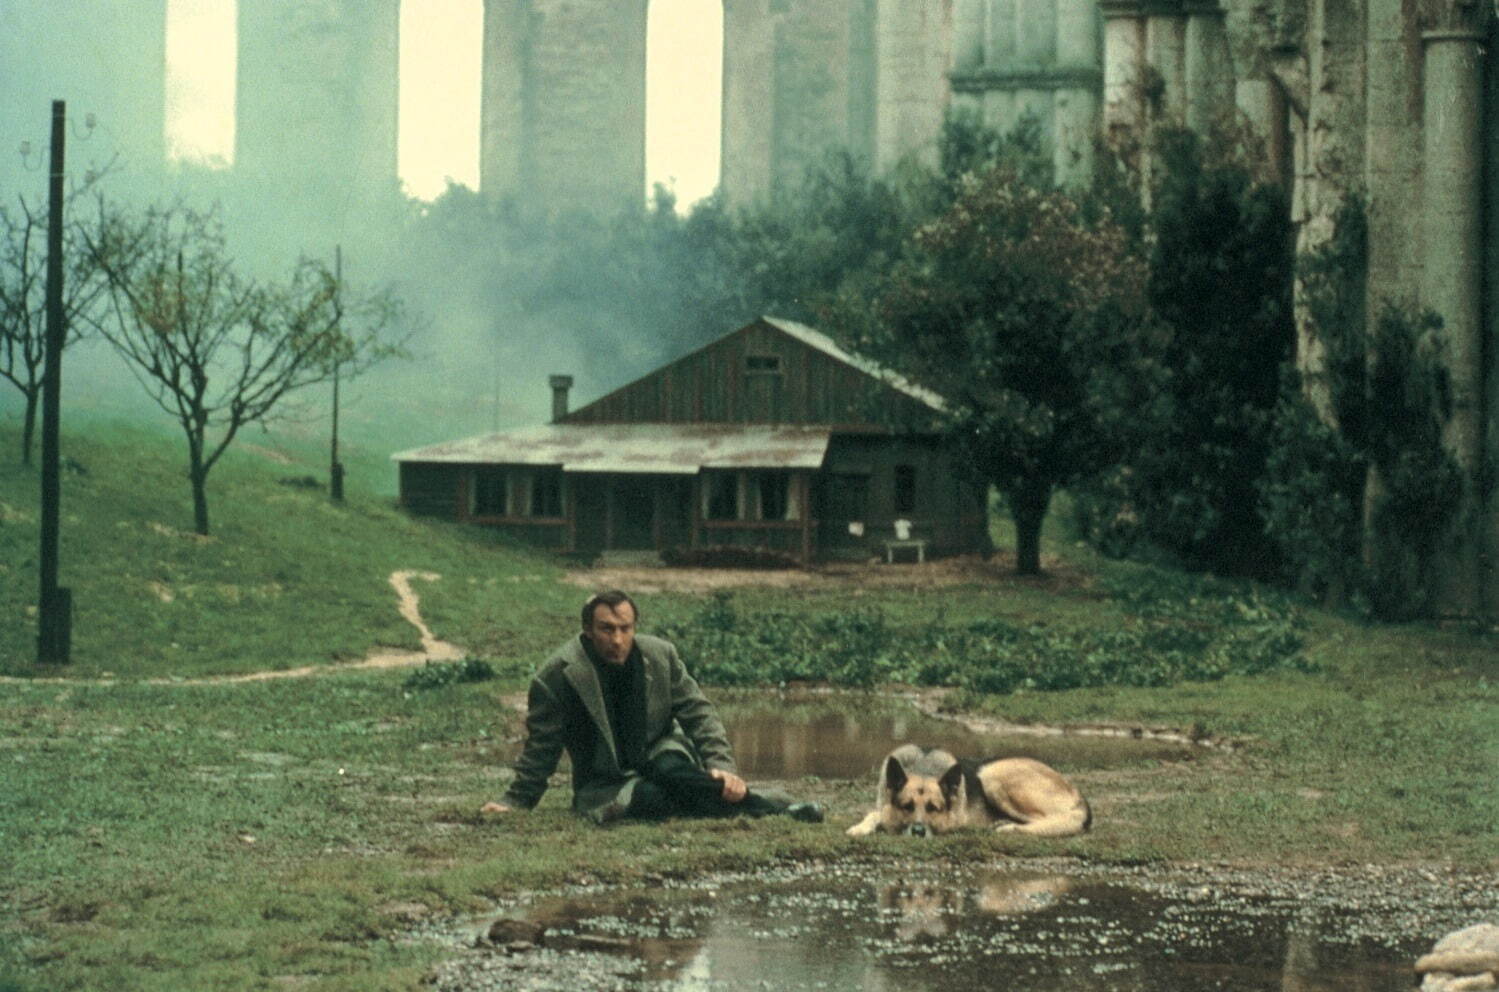 映画『ノスタルジア』4K 修復版で - アンドレイ・タルコフスキー監督が“郷愁”を描く詩的宇宙 | 写真